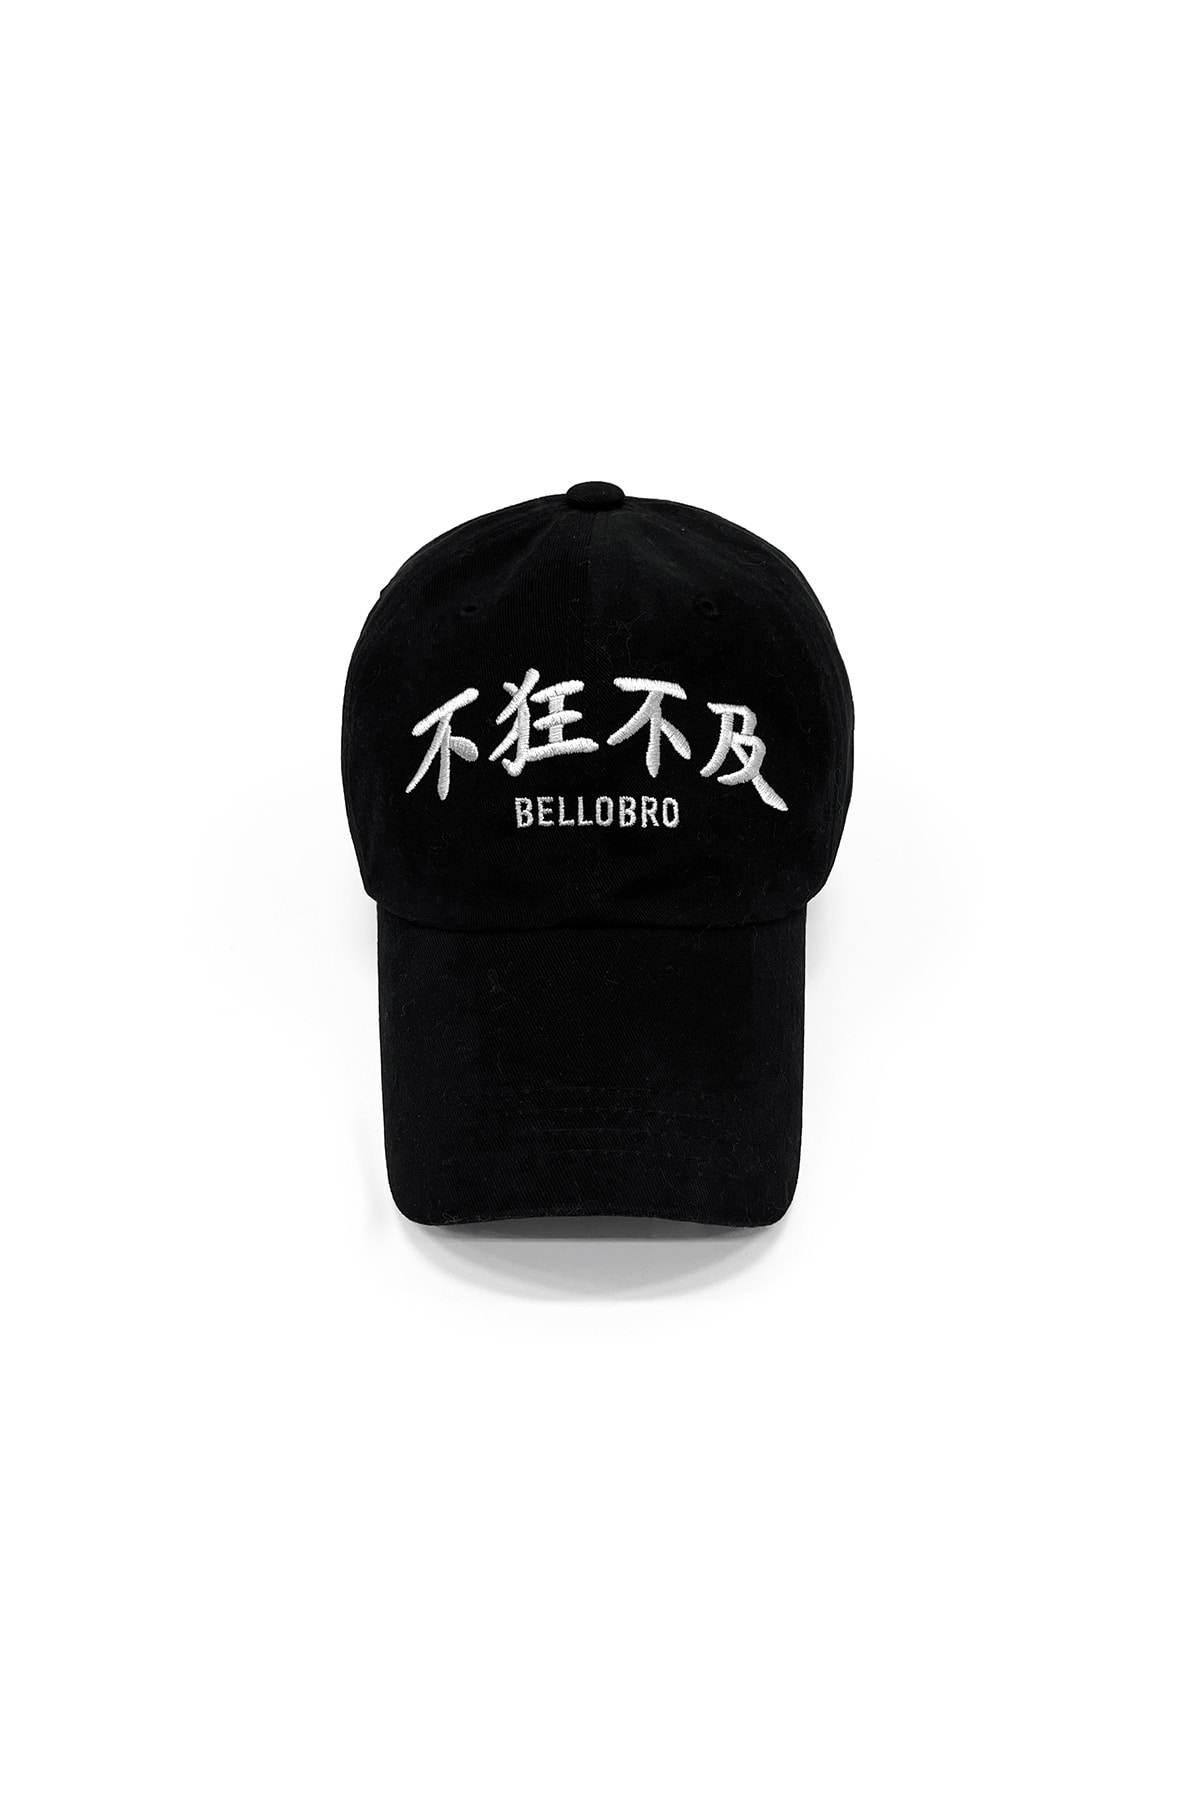 不狂不及 cap (black)